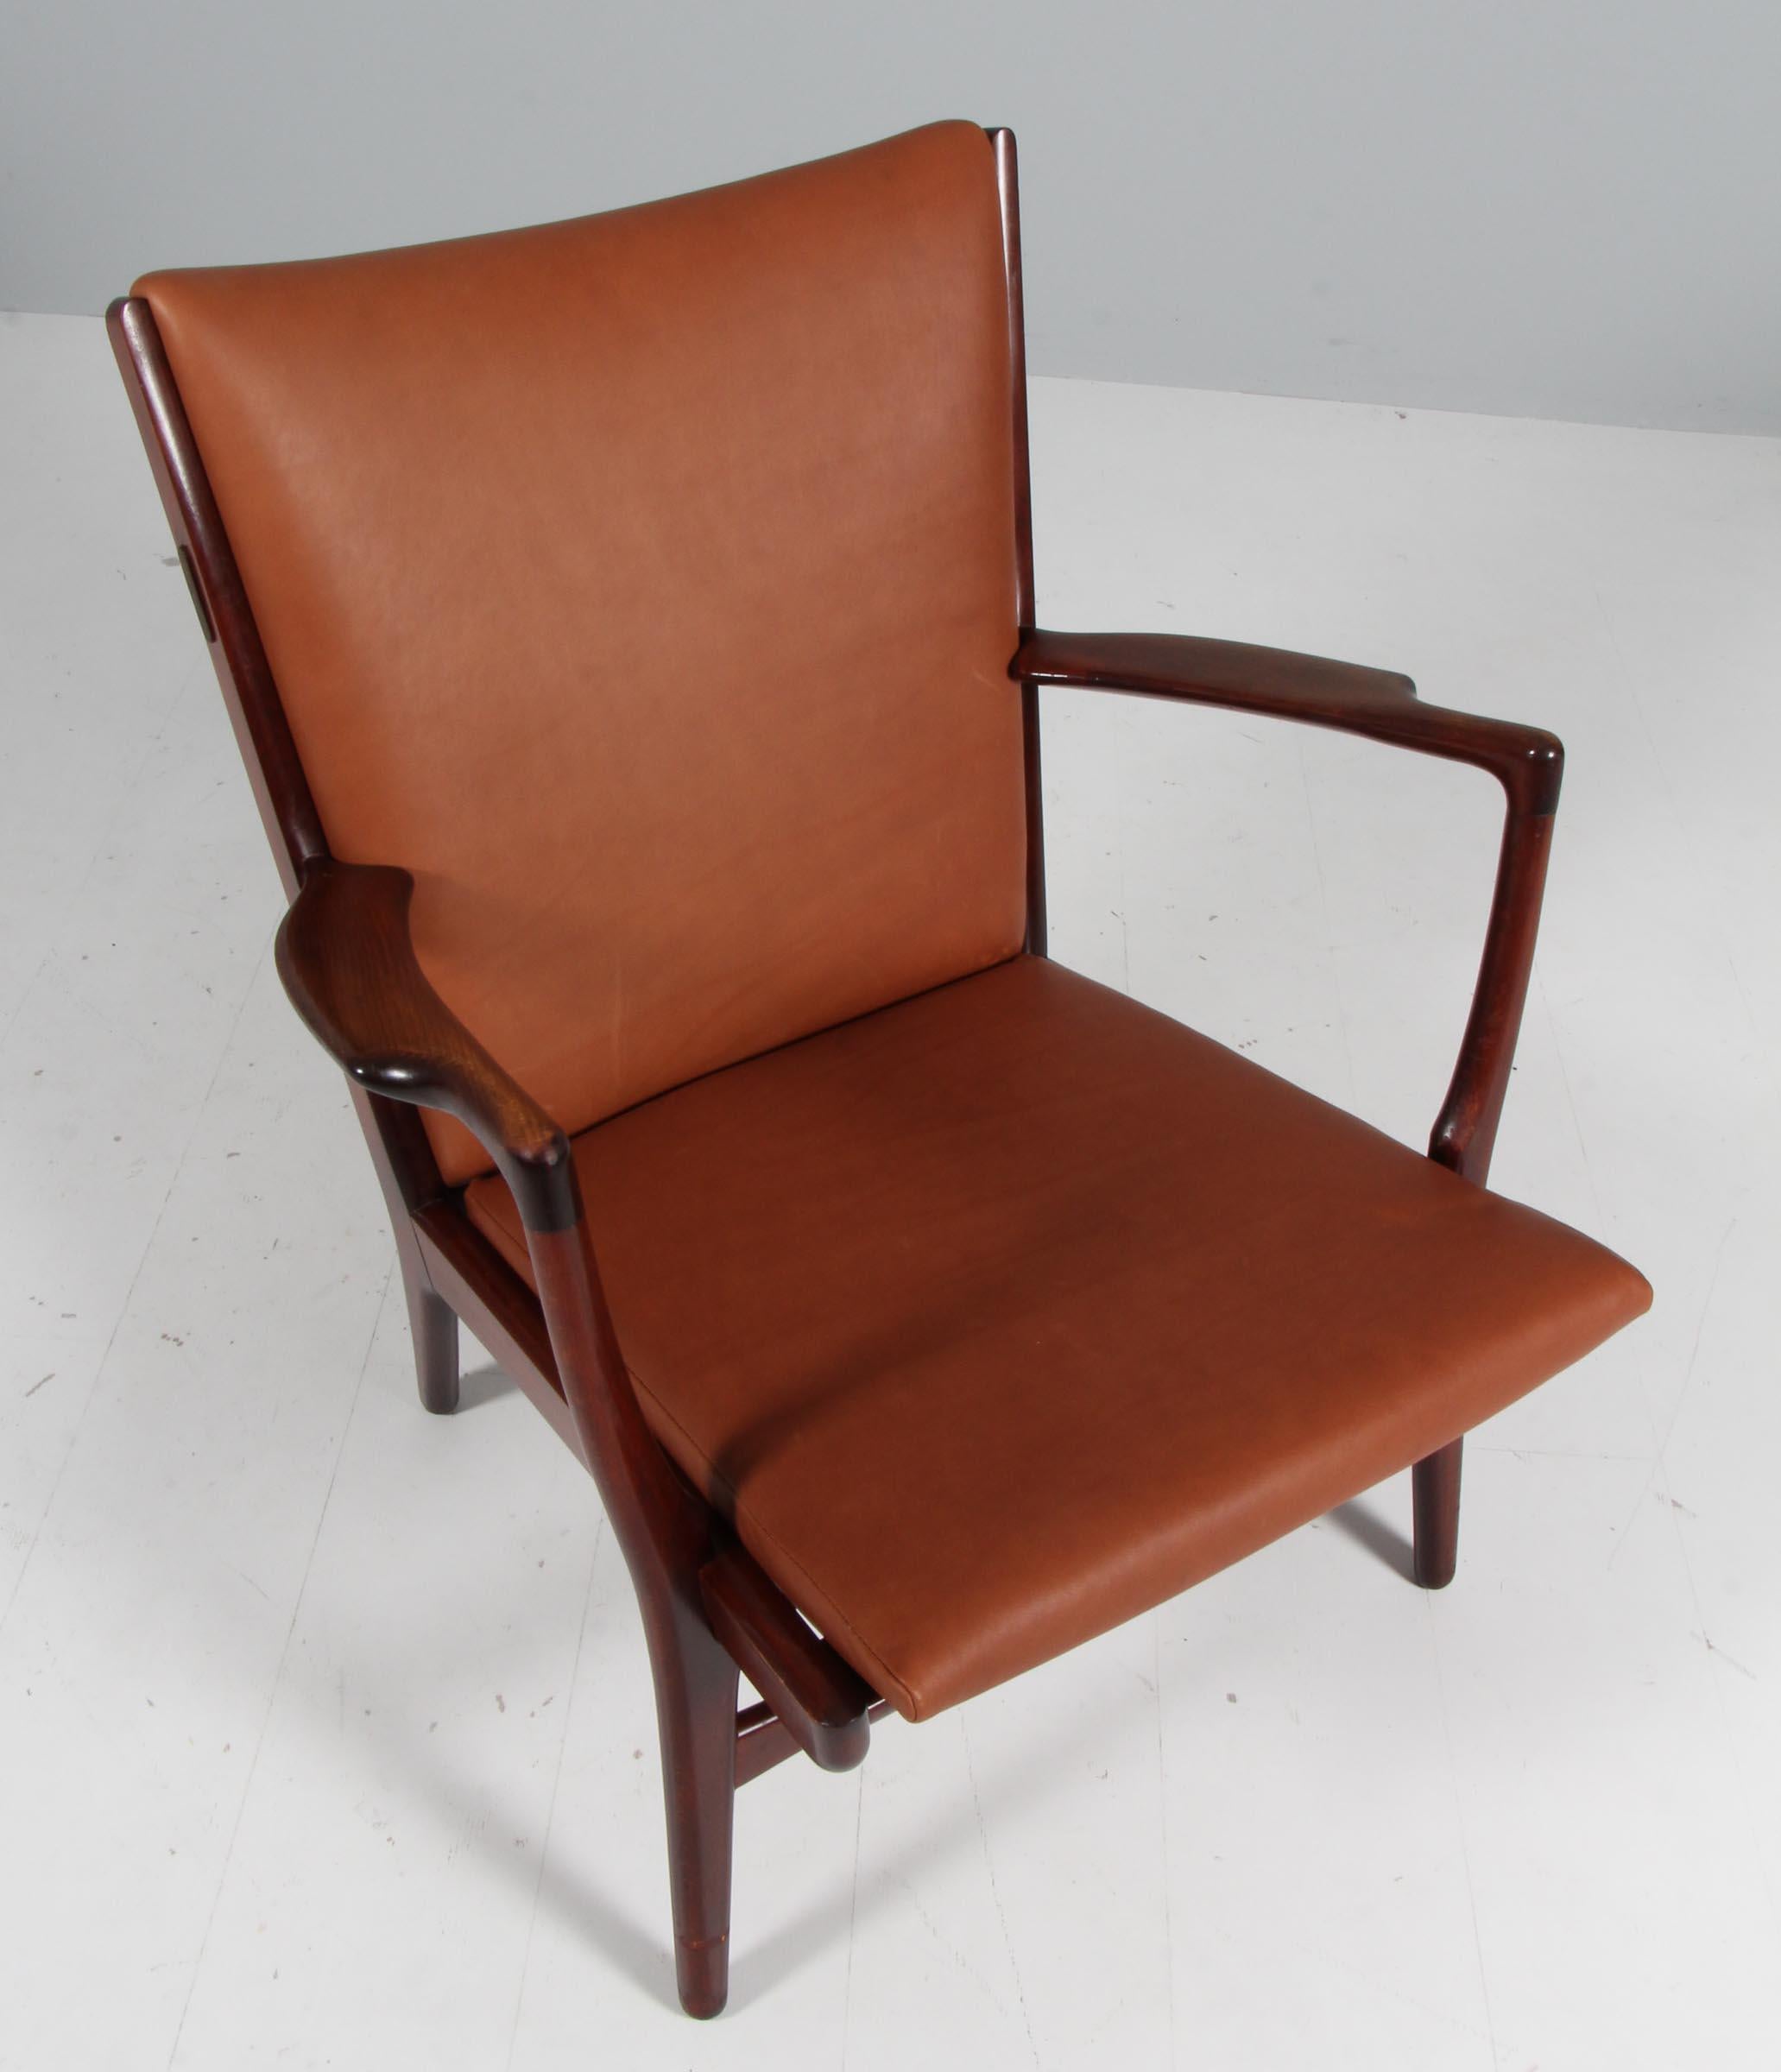 Entworfen von Hans Wegner im Jahr 1951 und hergestellt von A.P. Der robuste Sessel Stolen, Modell AP16, hat ein Buchengestell mit einer breiten, geschwungenen Rückenlehne und geschnitzten Armlehnen. Neu gepolstert mit vollnarbigem Anilinleder